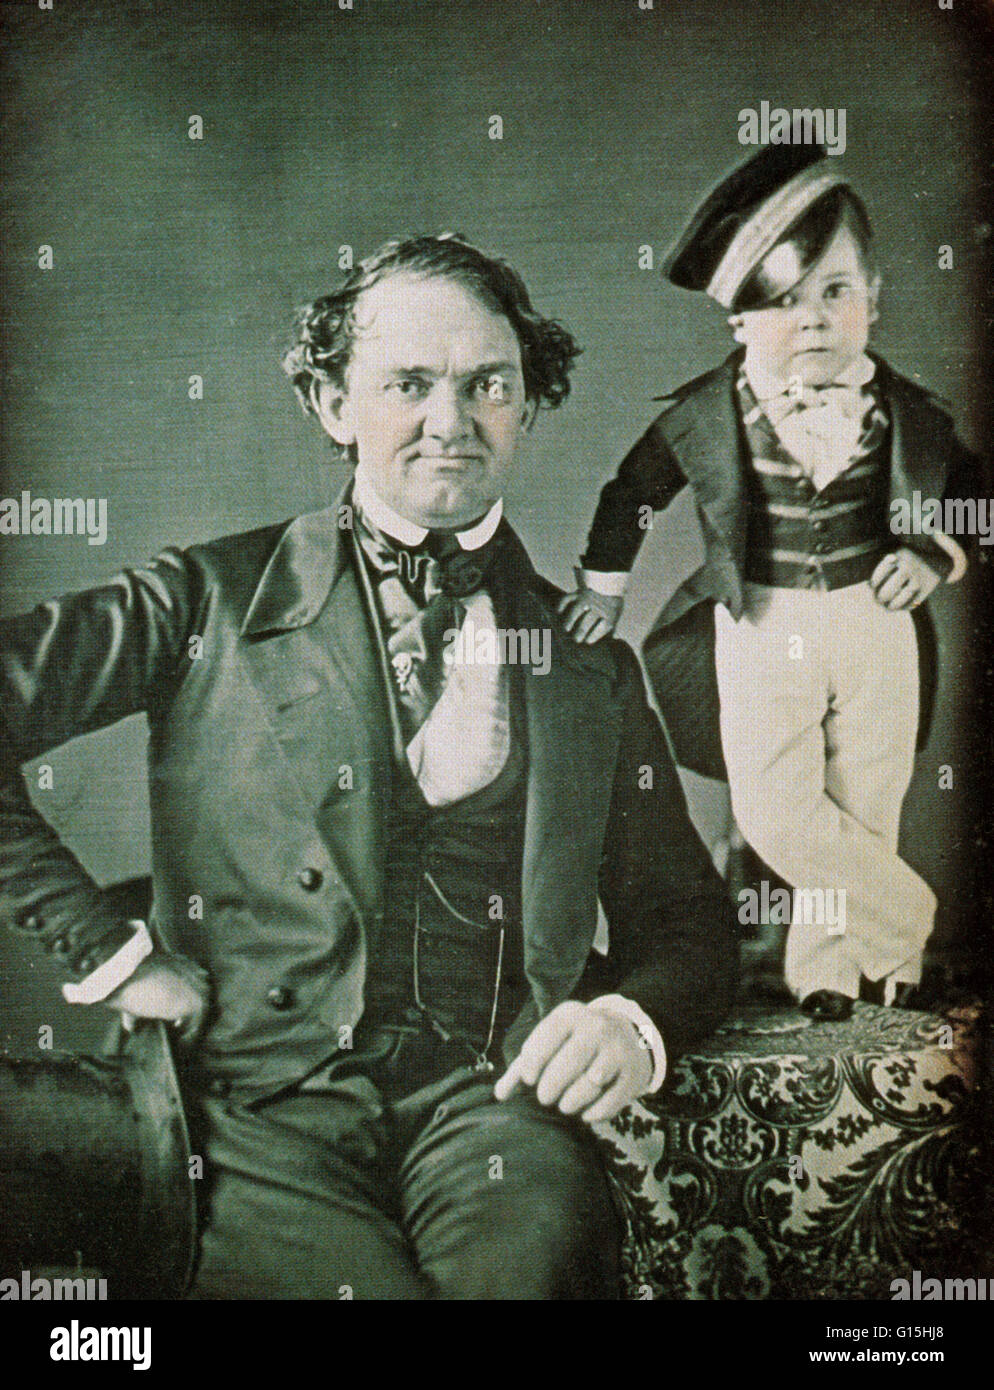 P.t. Barnum (1810-1891) und General Tom Thumb (Künstlername von Charles Sherwood Stratton (1838-1883)). Hochformat ca. 1850. Barnum gegründet Barnum & Bailey Circus, und Däumling war jahrelang ein beliebtes Zwerg-Darsteller im Zirkus Stockfoto